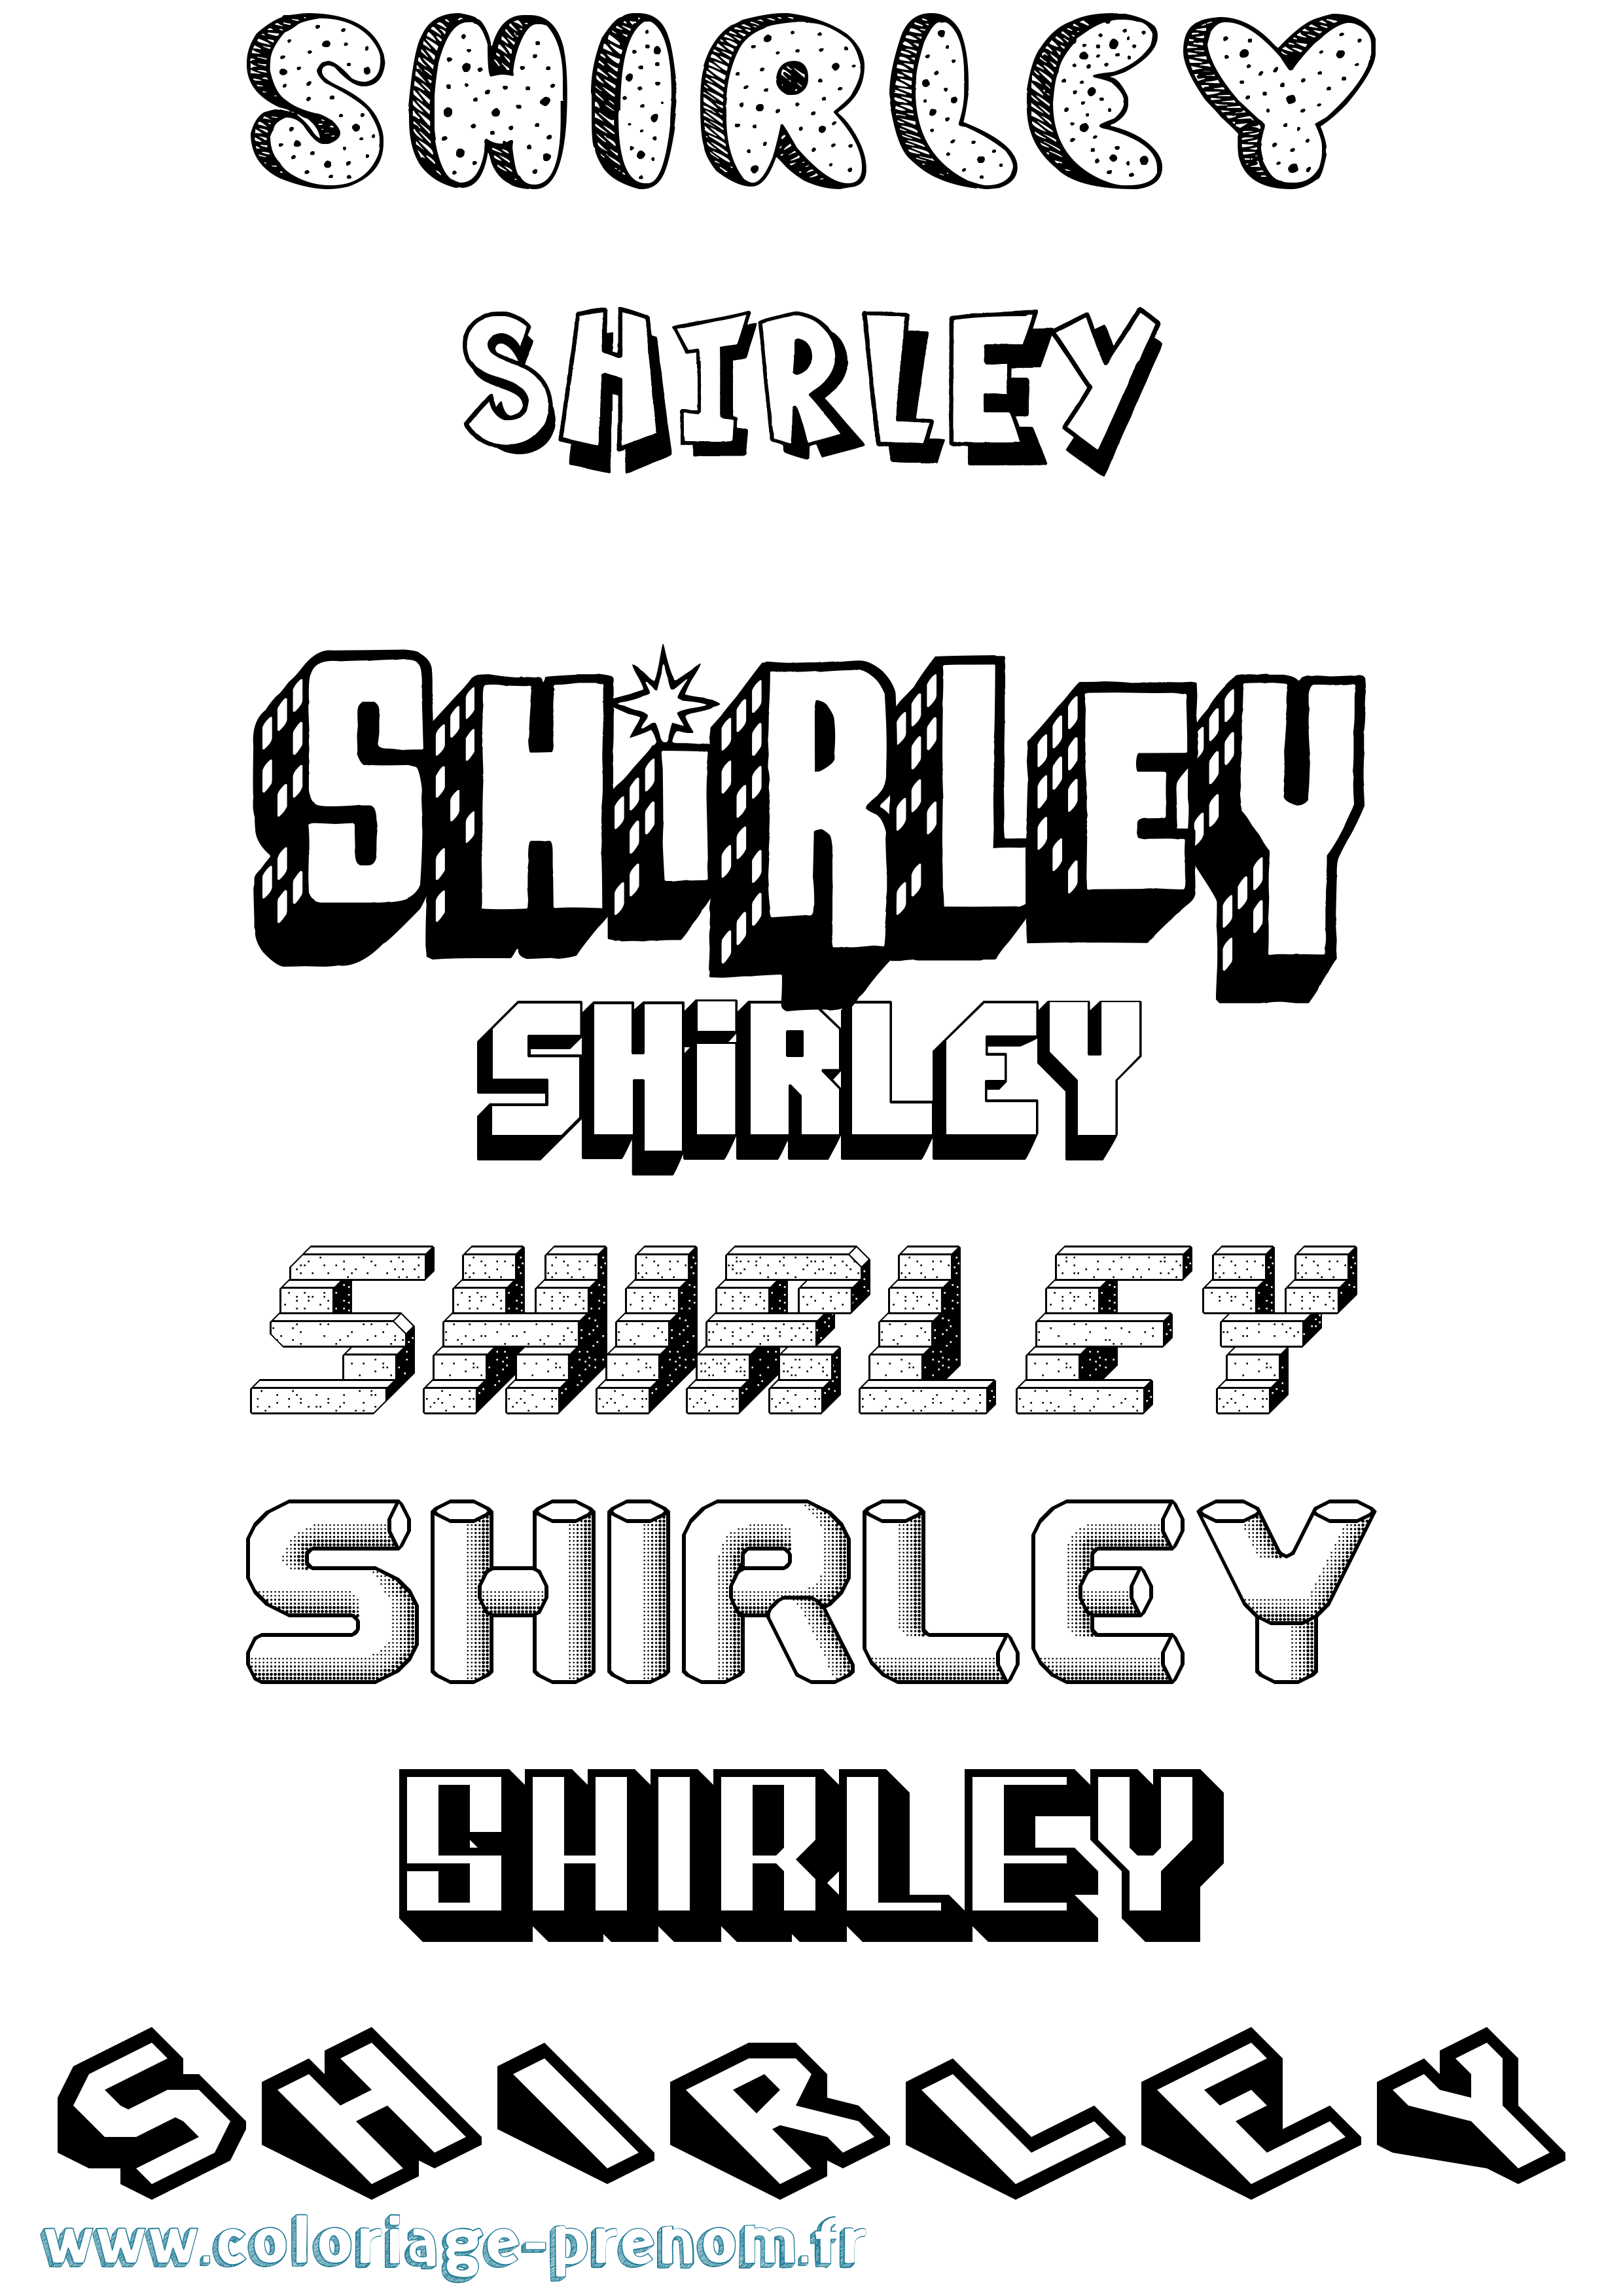 Coloriage prénom Shirley Effet 3D